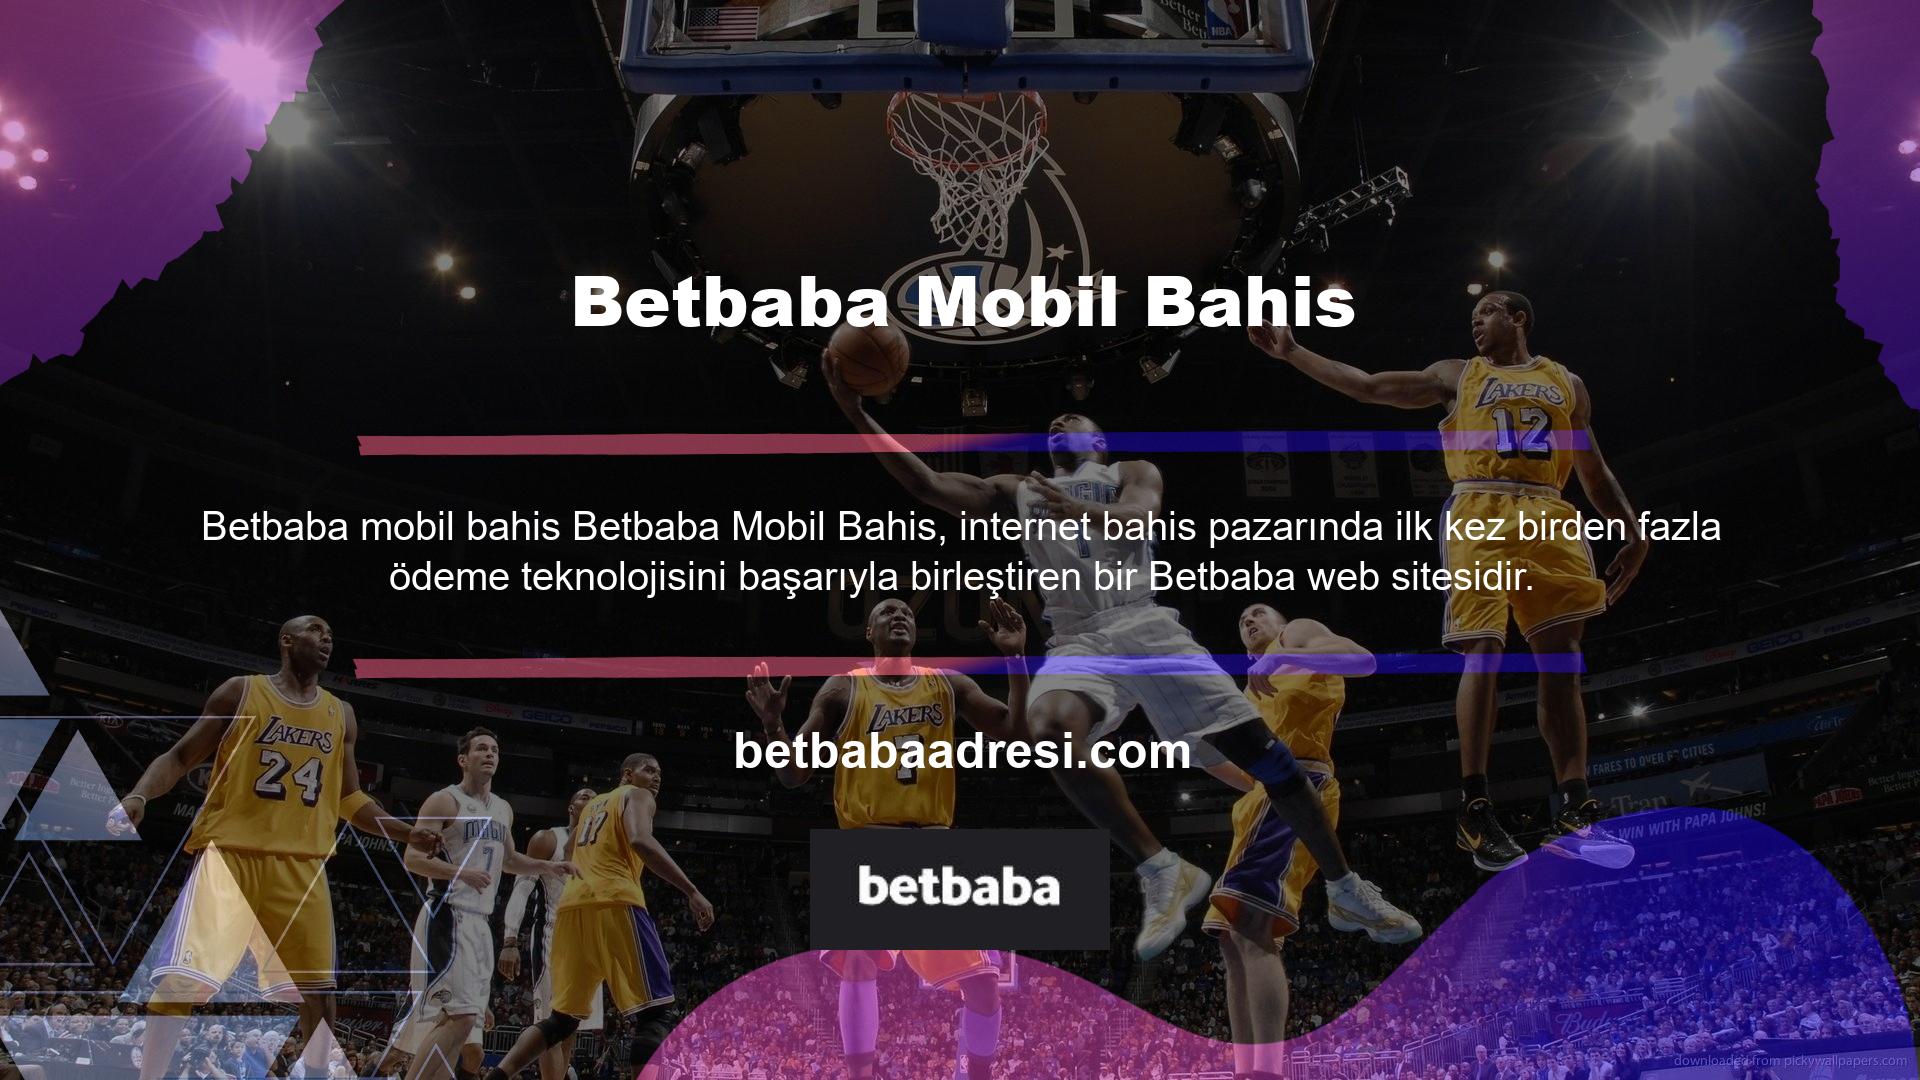 Betbaba, var olan köklü bir Betbaba web sitesidir